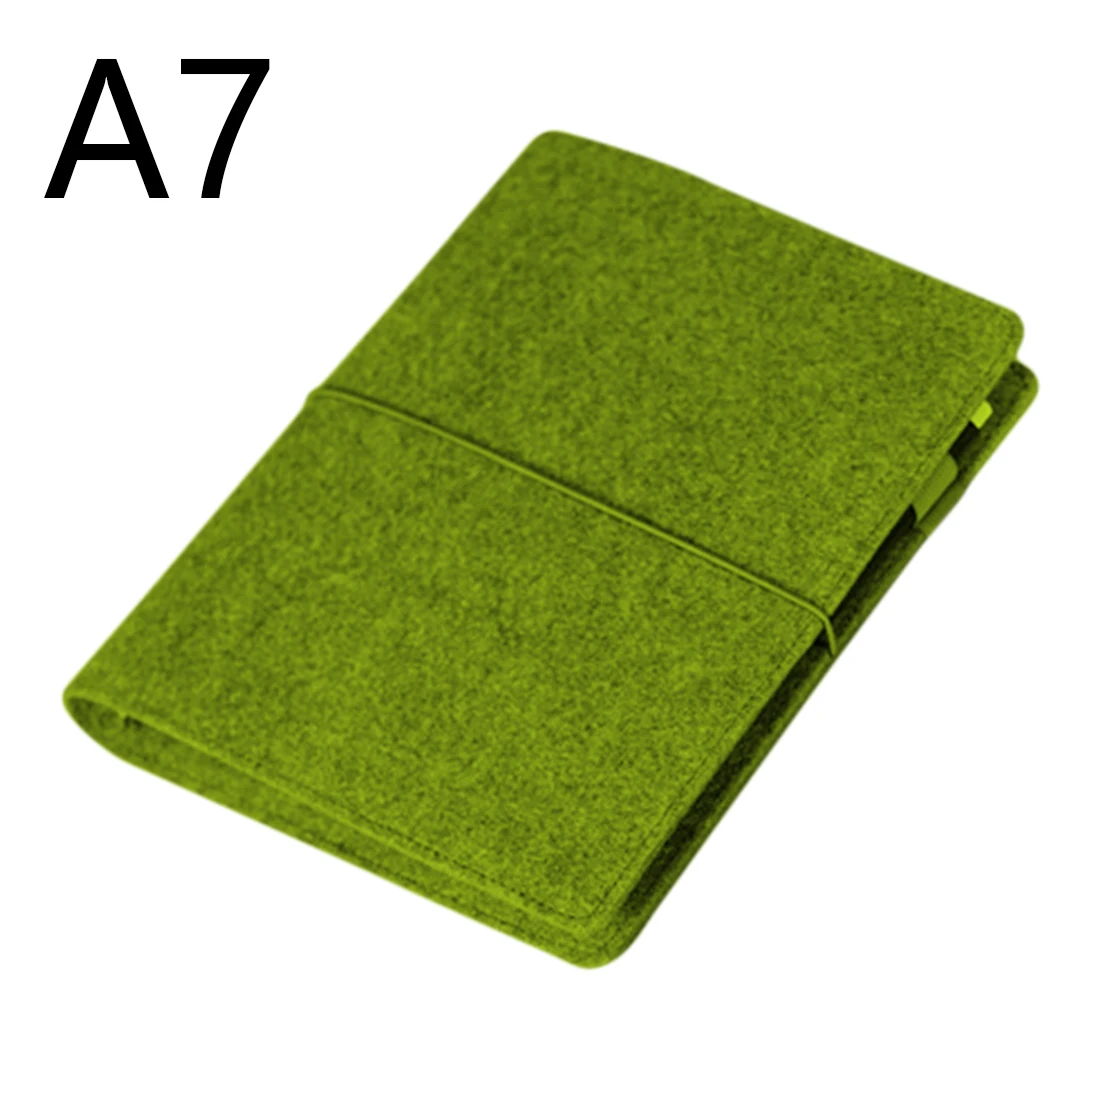 Фетровая оболочка ткань Nook вкладыш внутренний ядро A7 блокнот дневник план Биндер офисные принадлежности кольцо Биндер - Цвет: Green